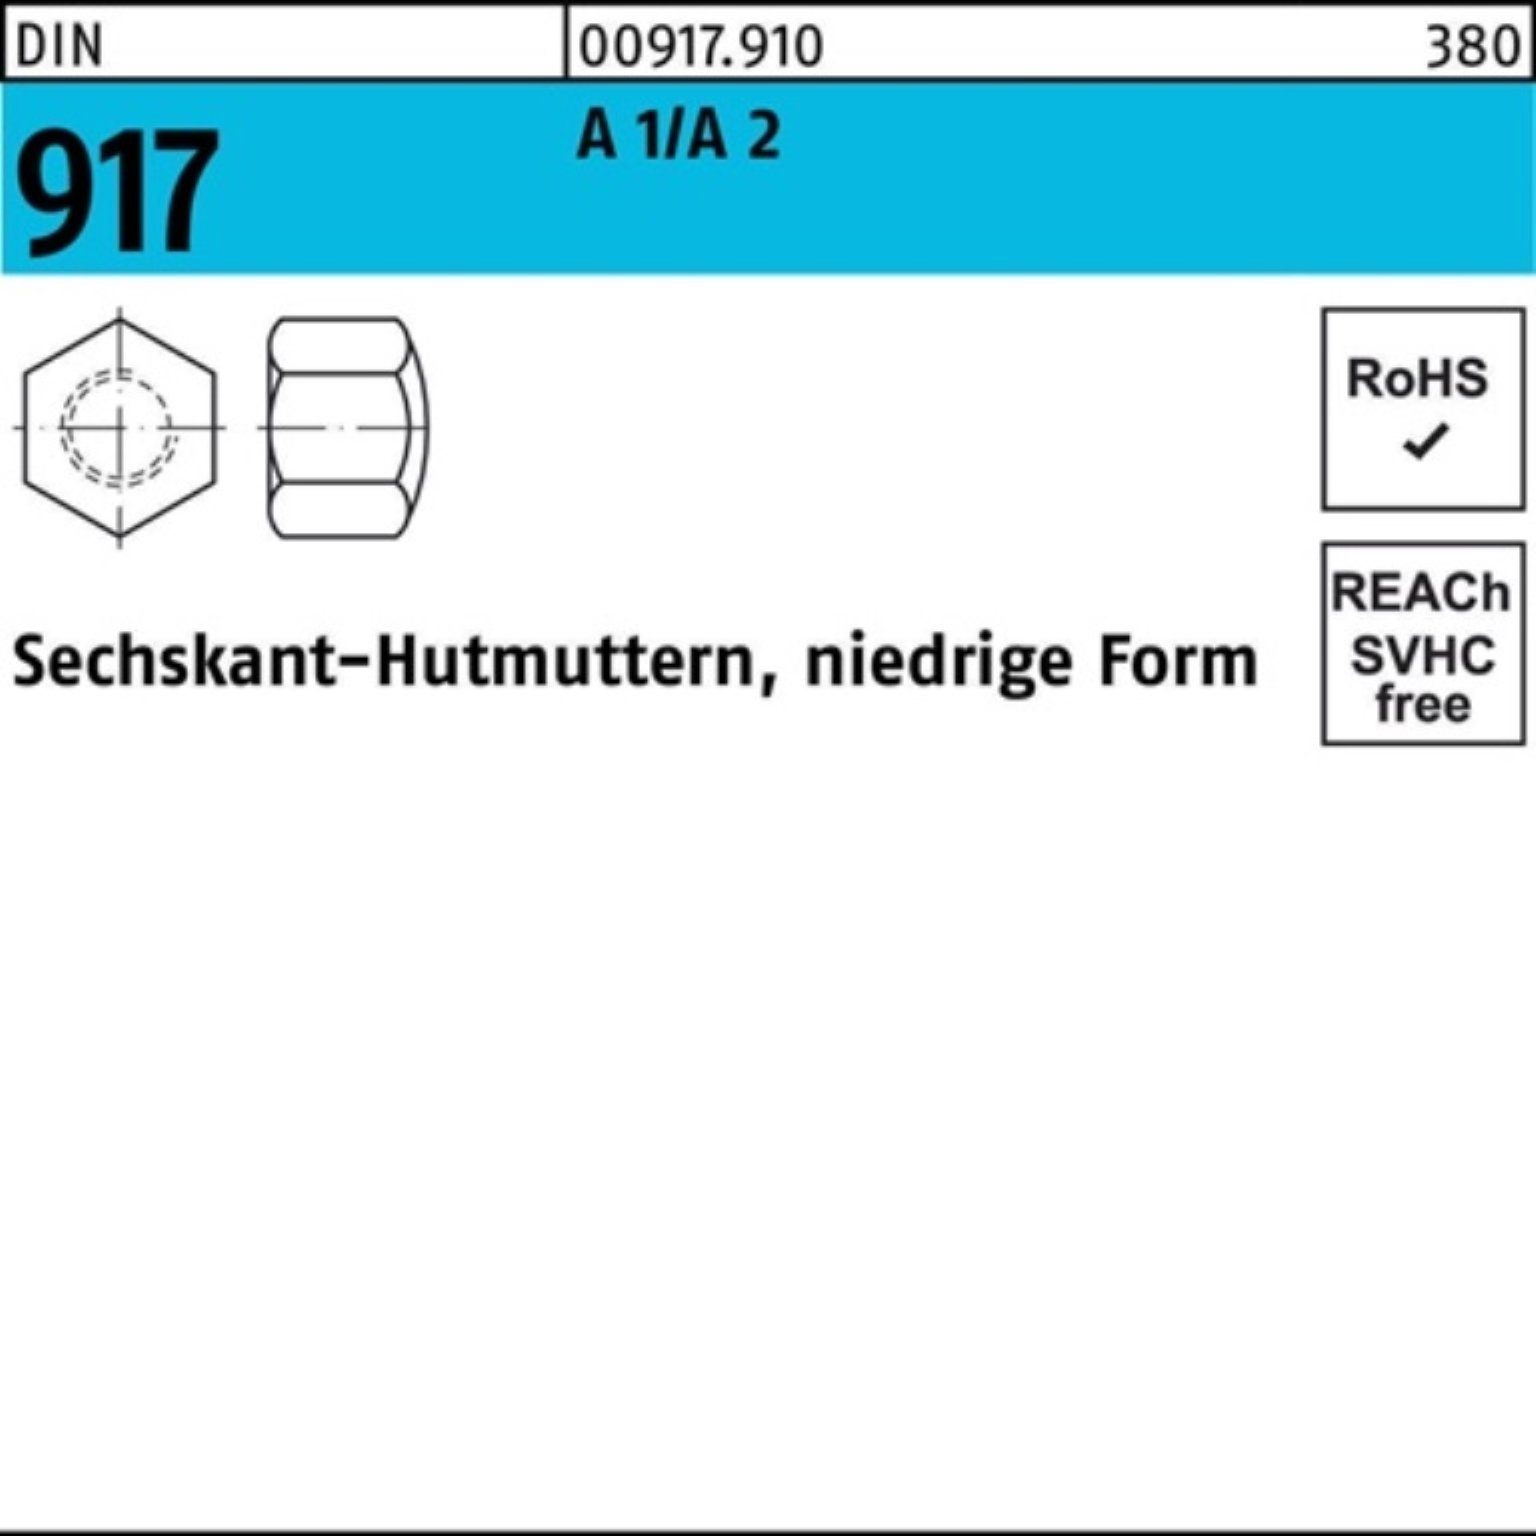 Reyher Hutmutter 100er Pack Sechskanthutmutter DIN 917 niedrige FormM5 A 1/A 2 50 Stüc